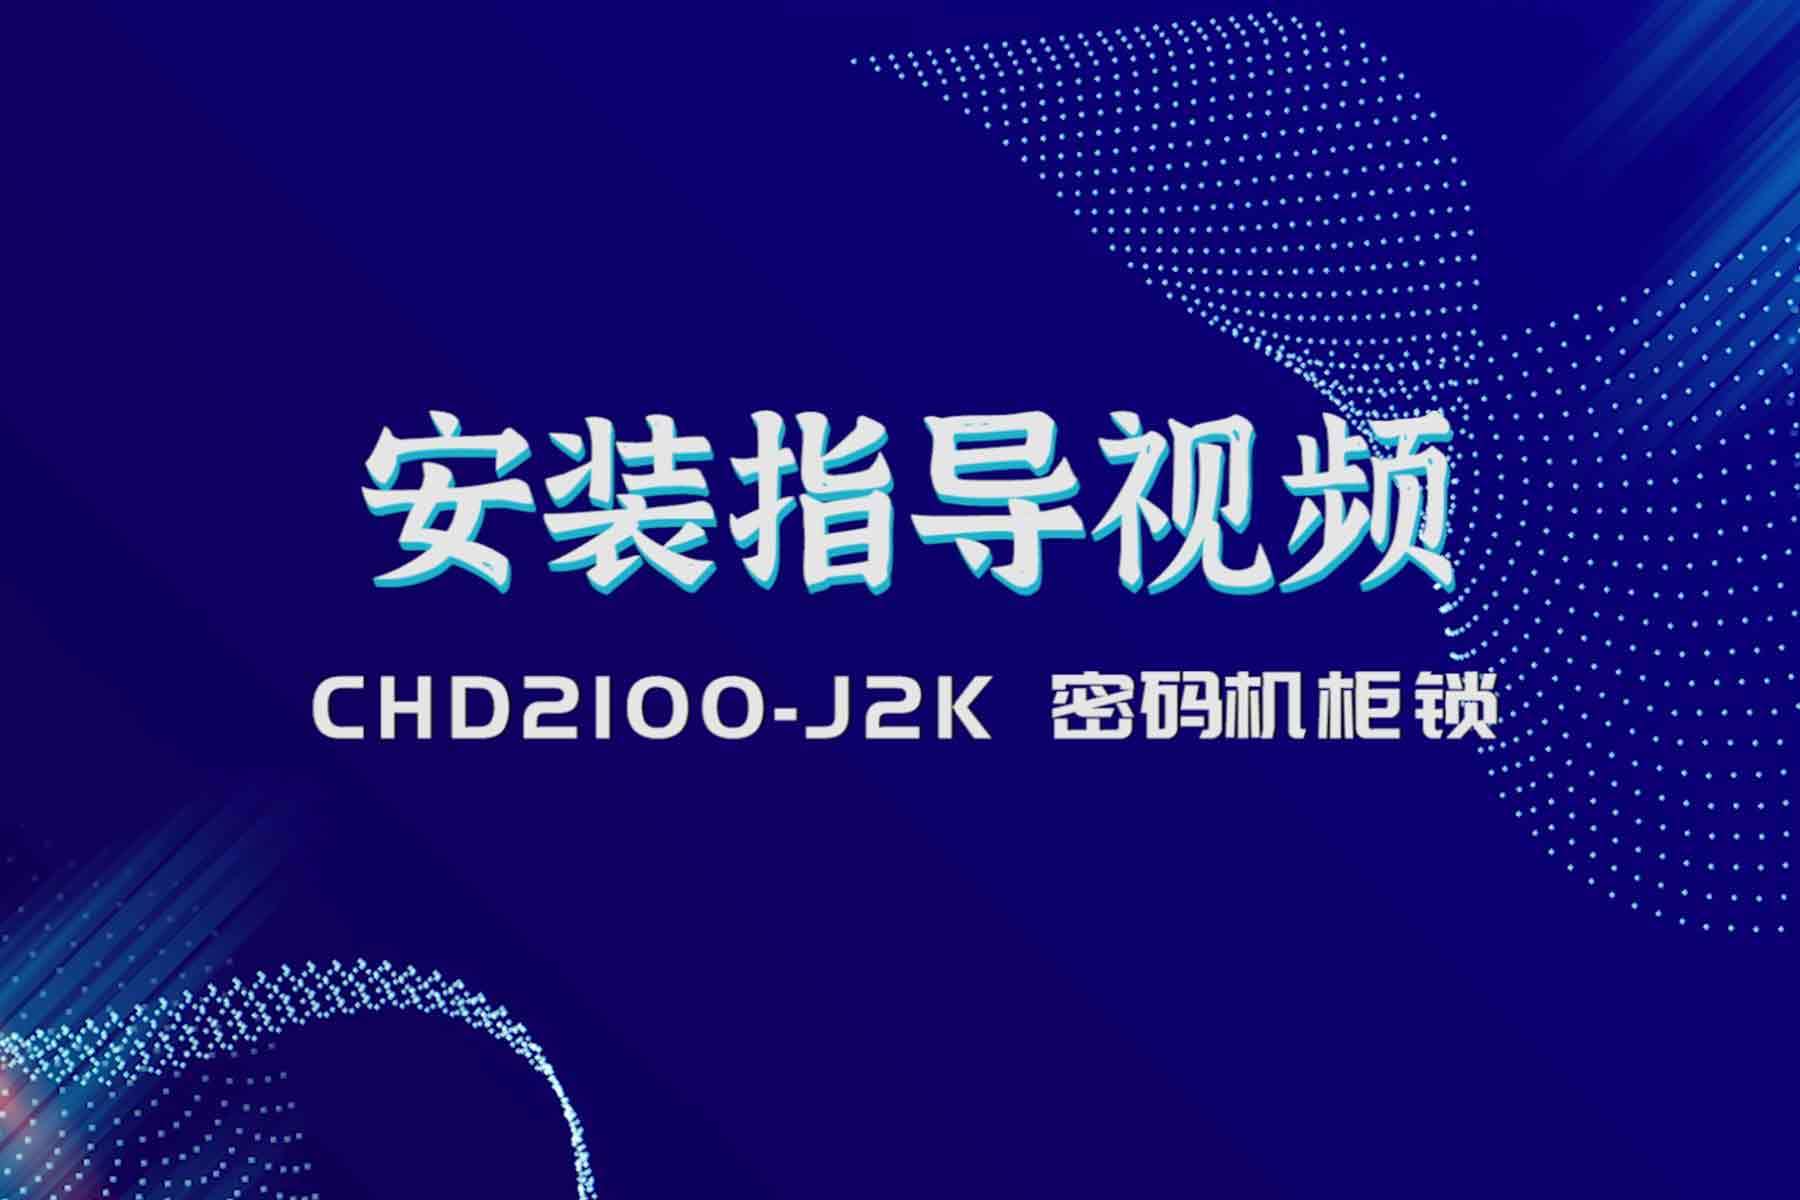 2100-J2K安装指导视频